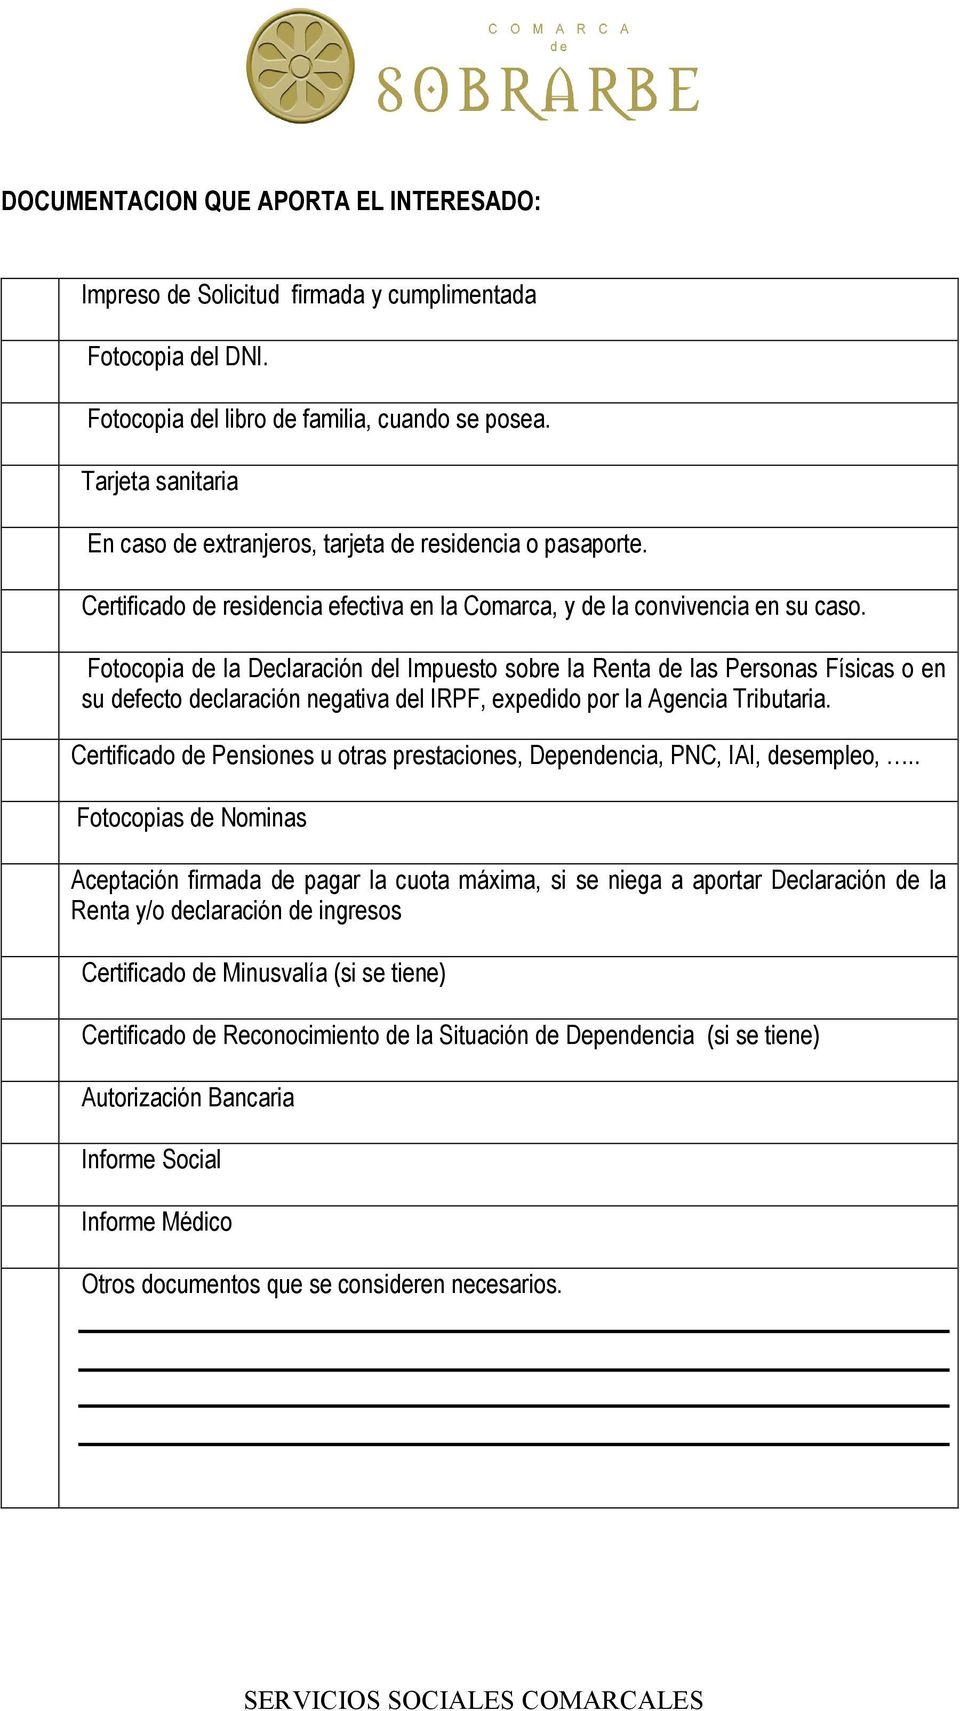 Fotocopia de la Declaración del Impuesto sobre la Renta de las Personas Físicas o en su defecto declaración negativa del IRPF, expedido por la Agencia Tributaria.